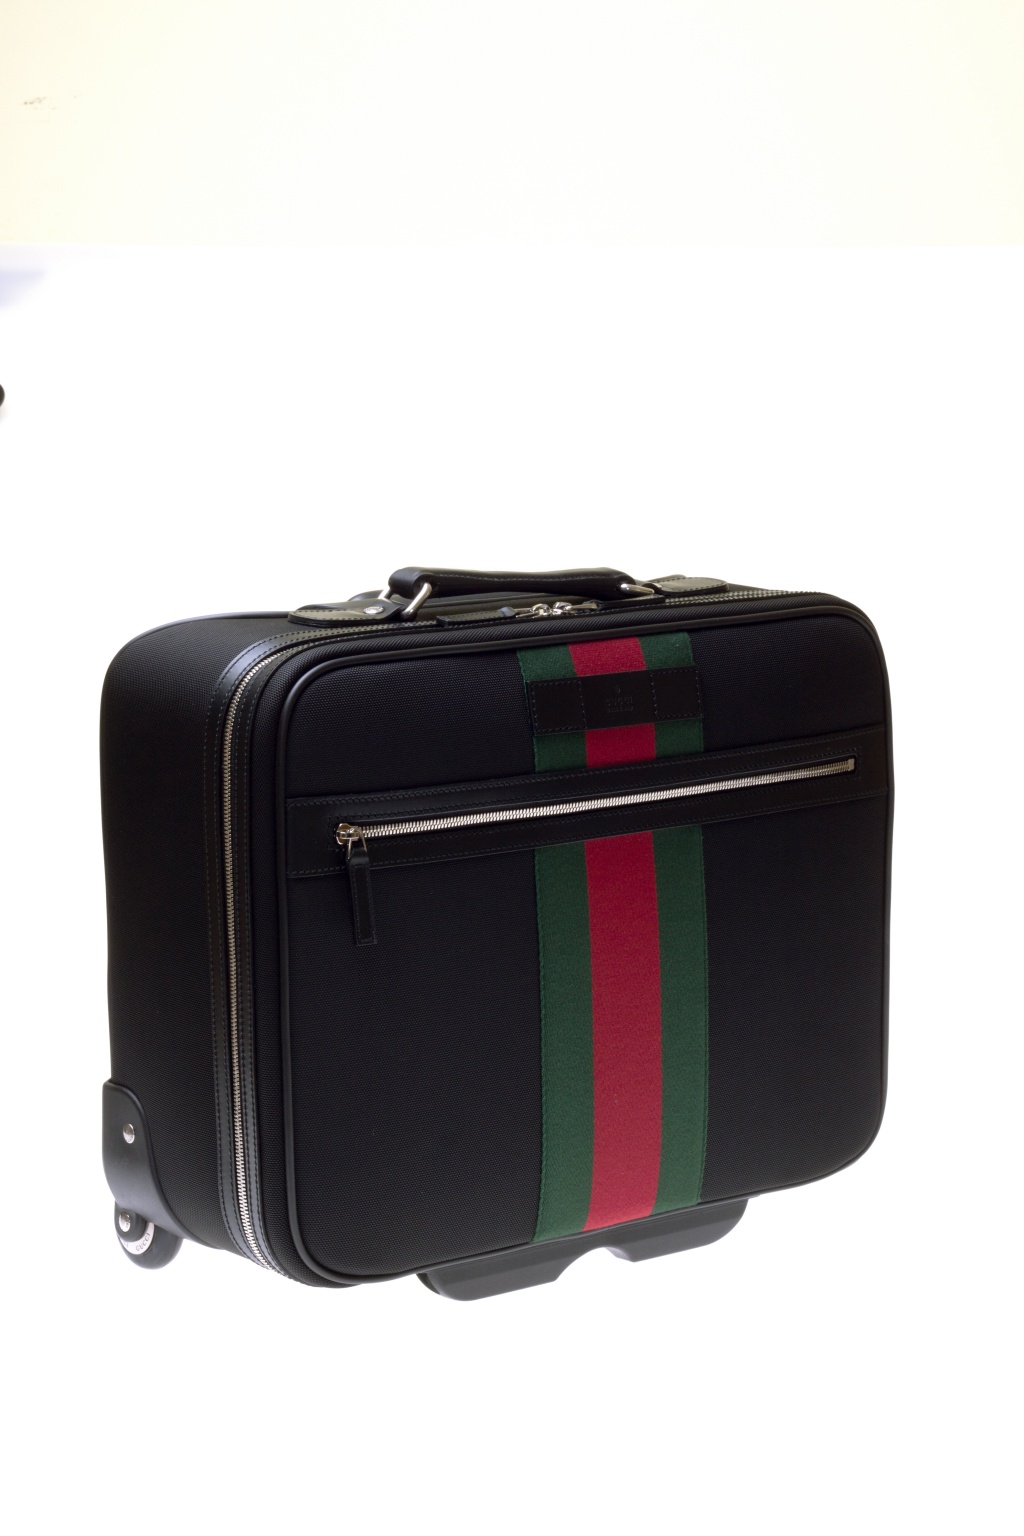 Small Suitcase Gucci - Vitkac Australia